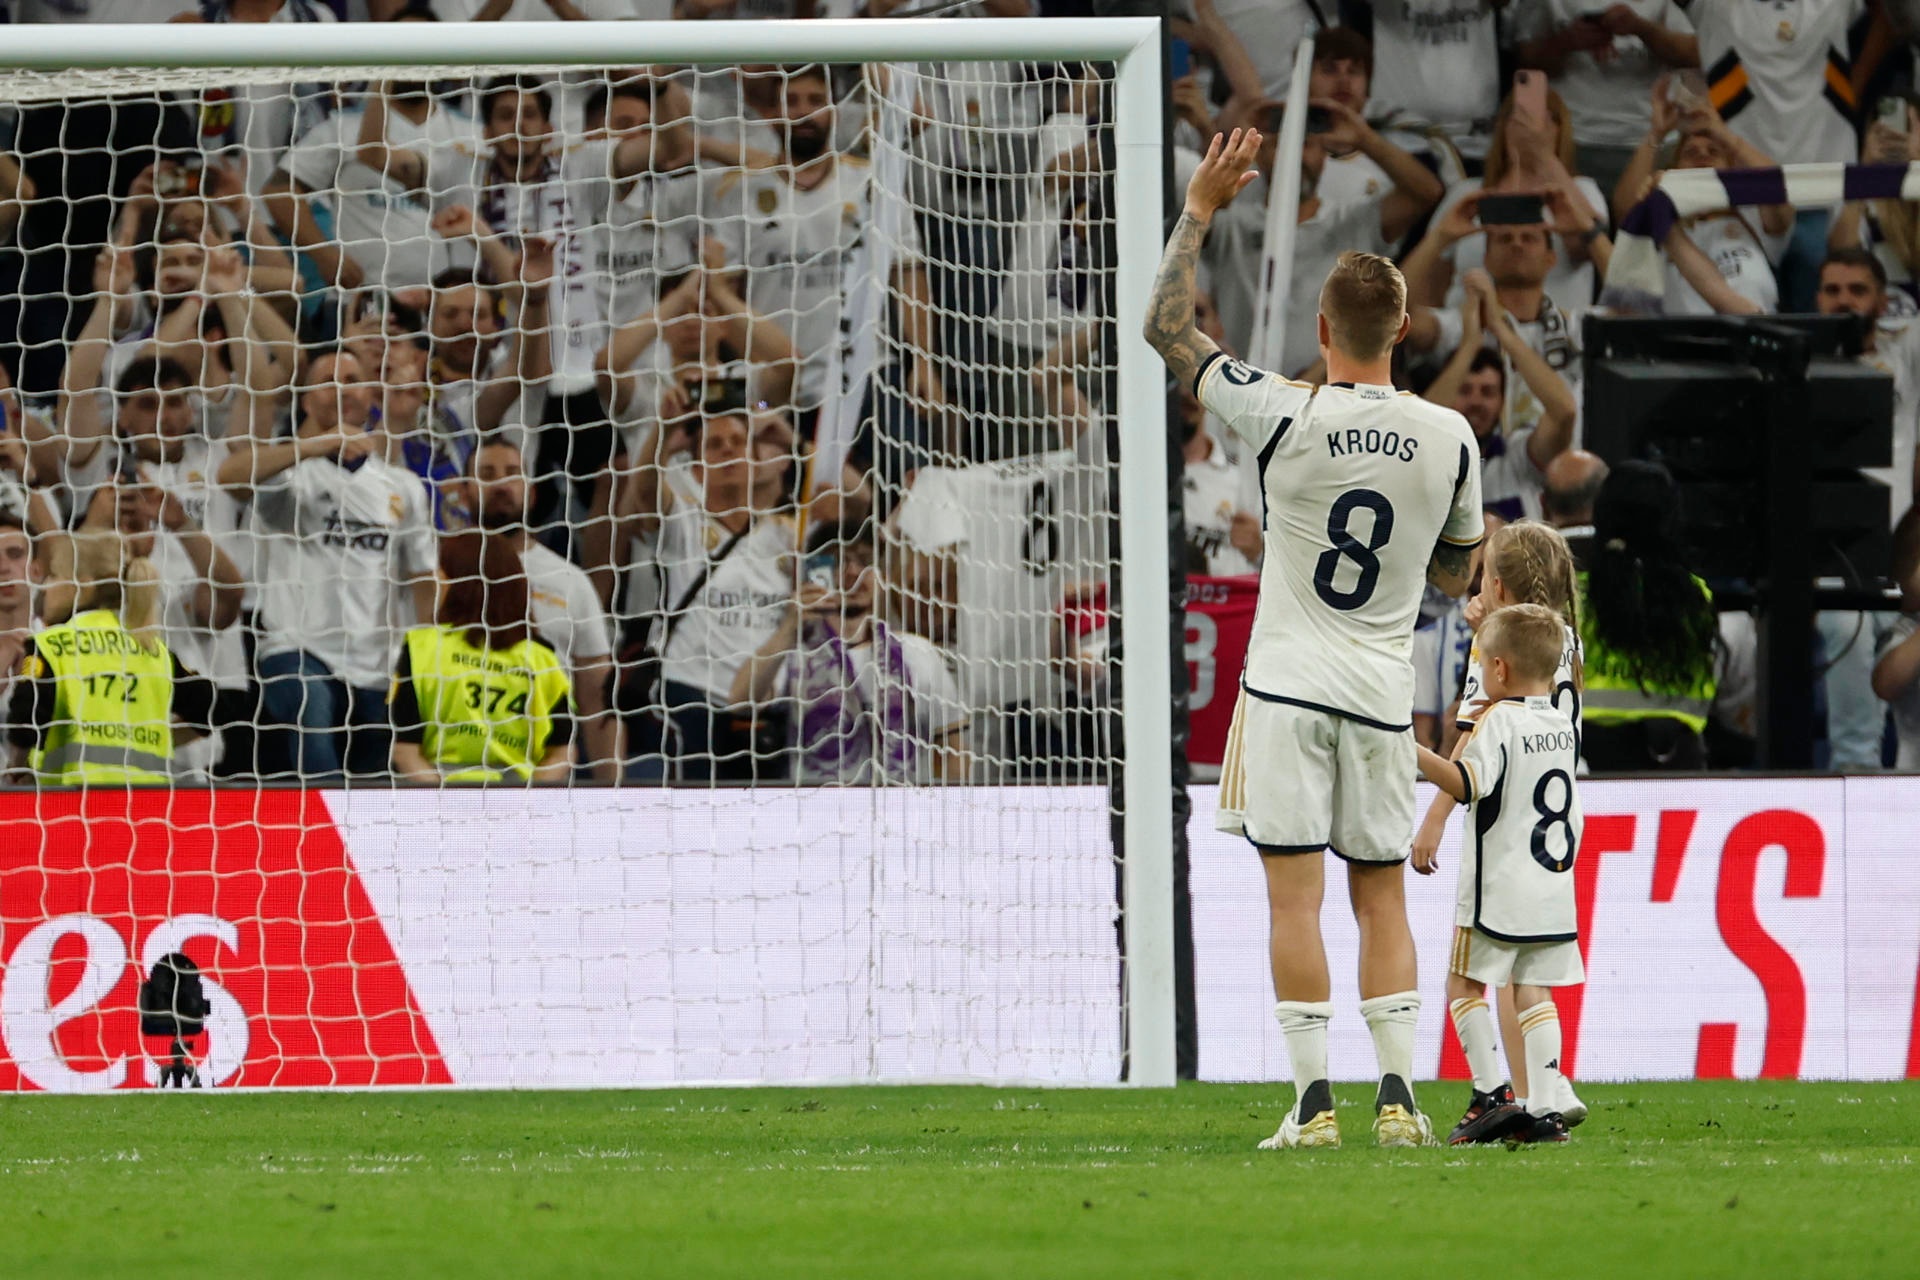 Madrid keeps winning despite legends leaving, says Toni Kroos